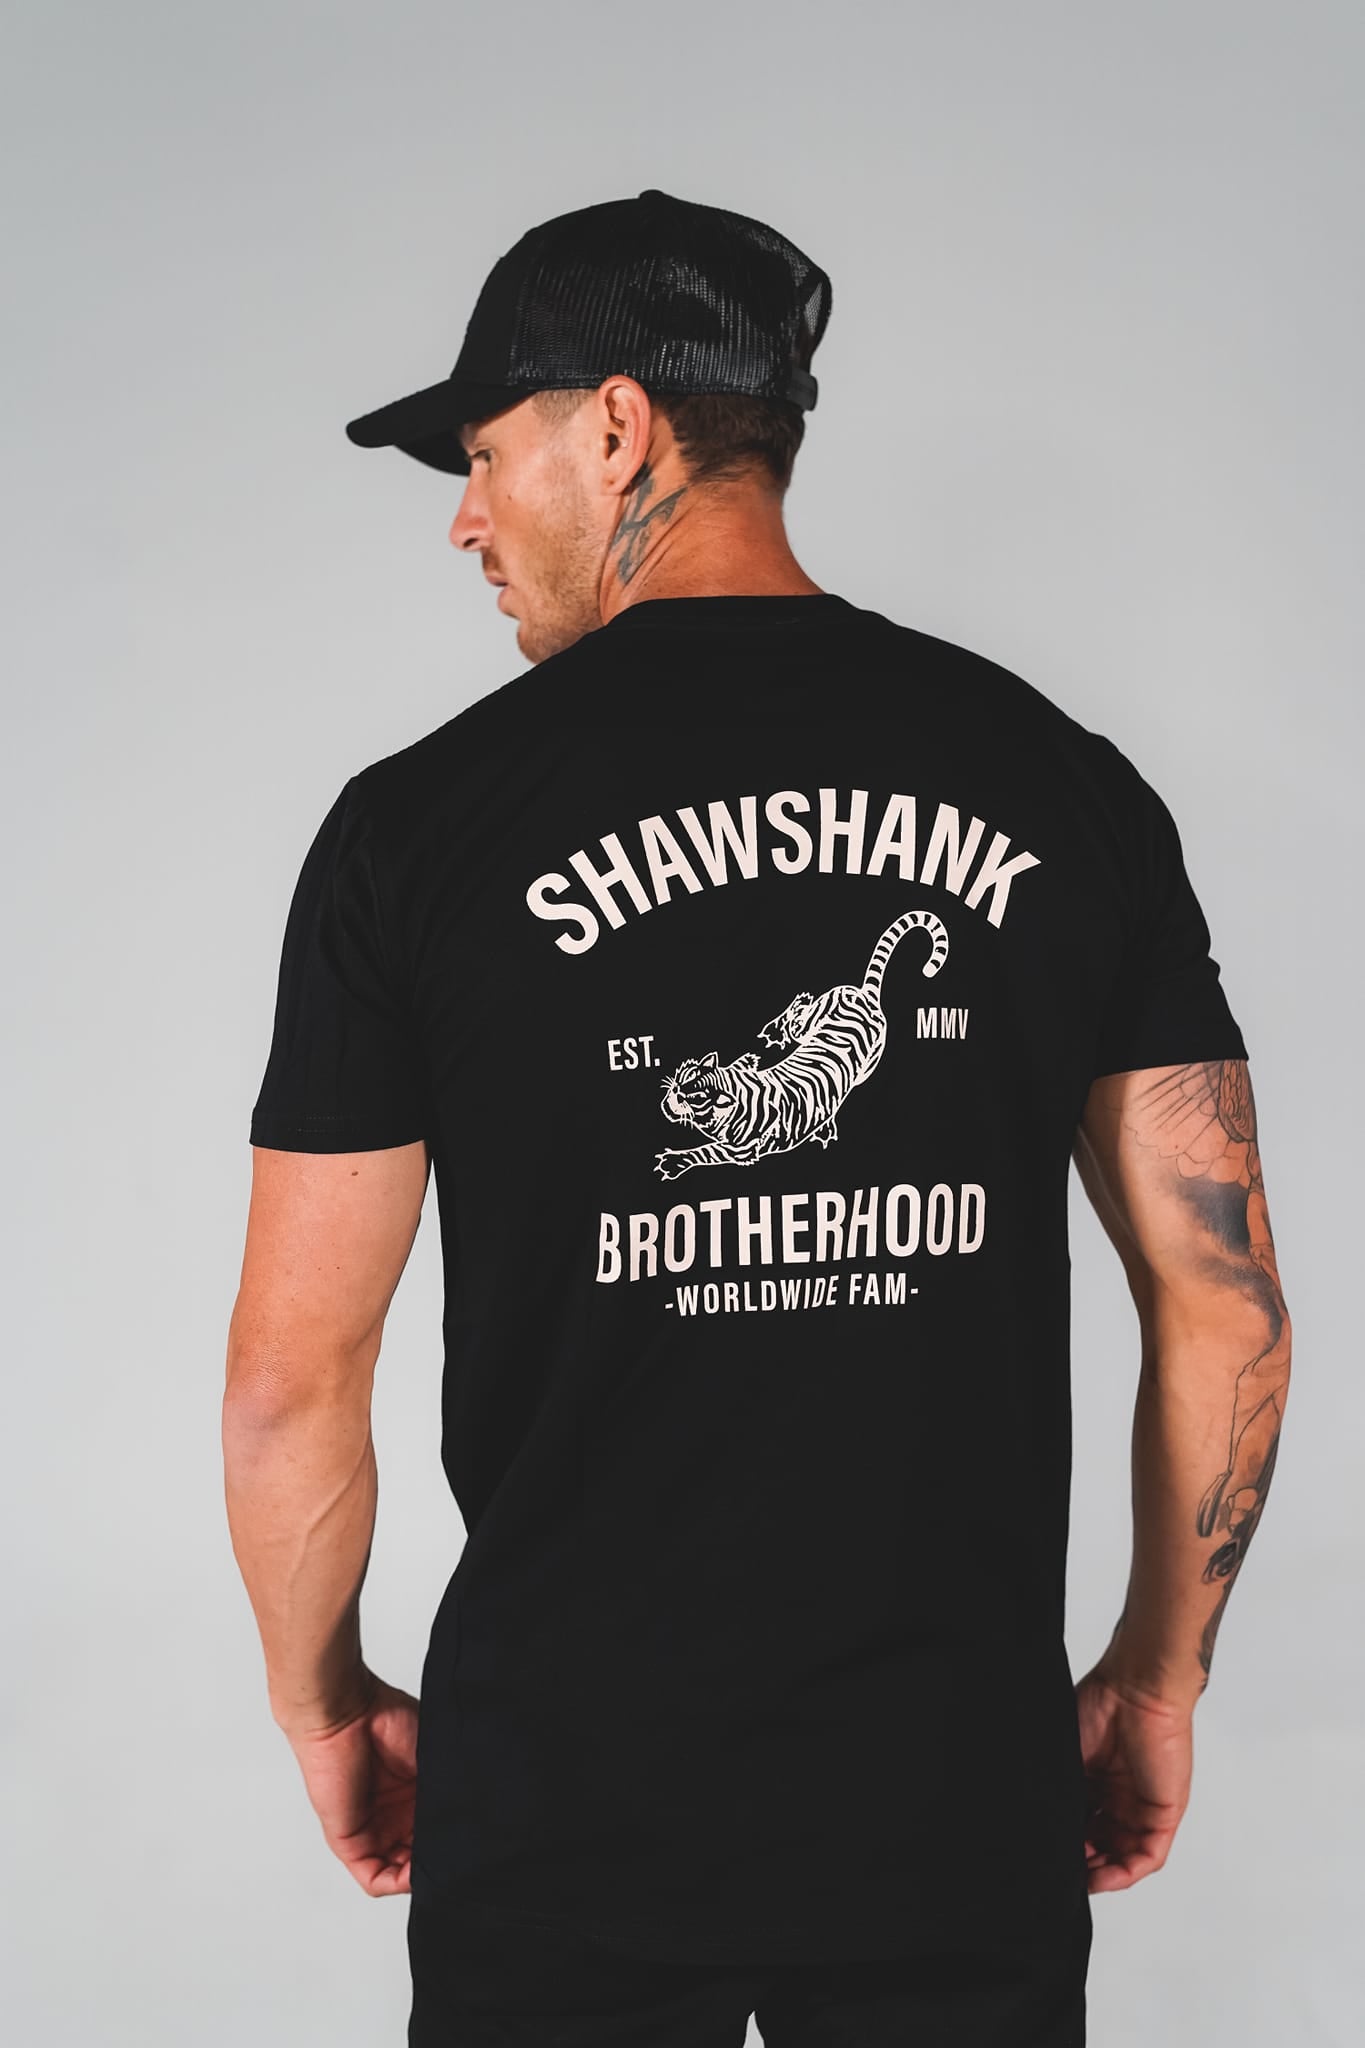 Men&#39;s &#39;&#39;Shawshank brotherhood&#39;&#39; Print T-Shirt.